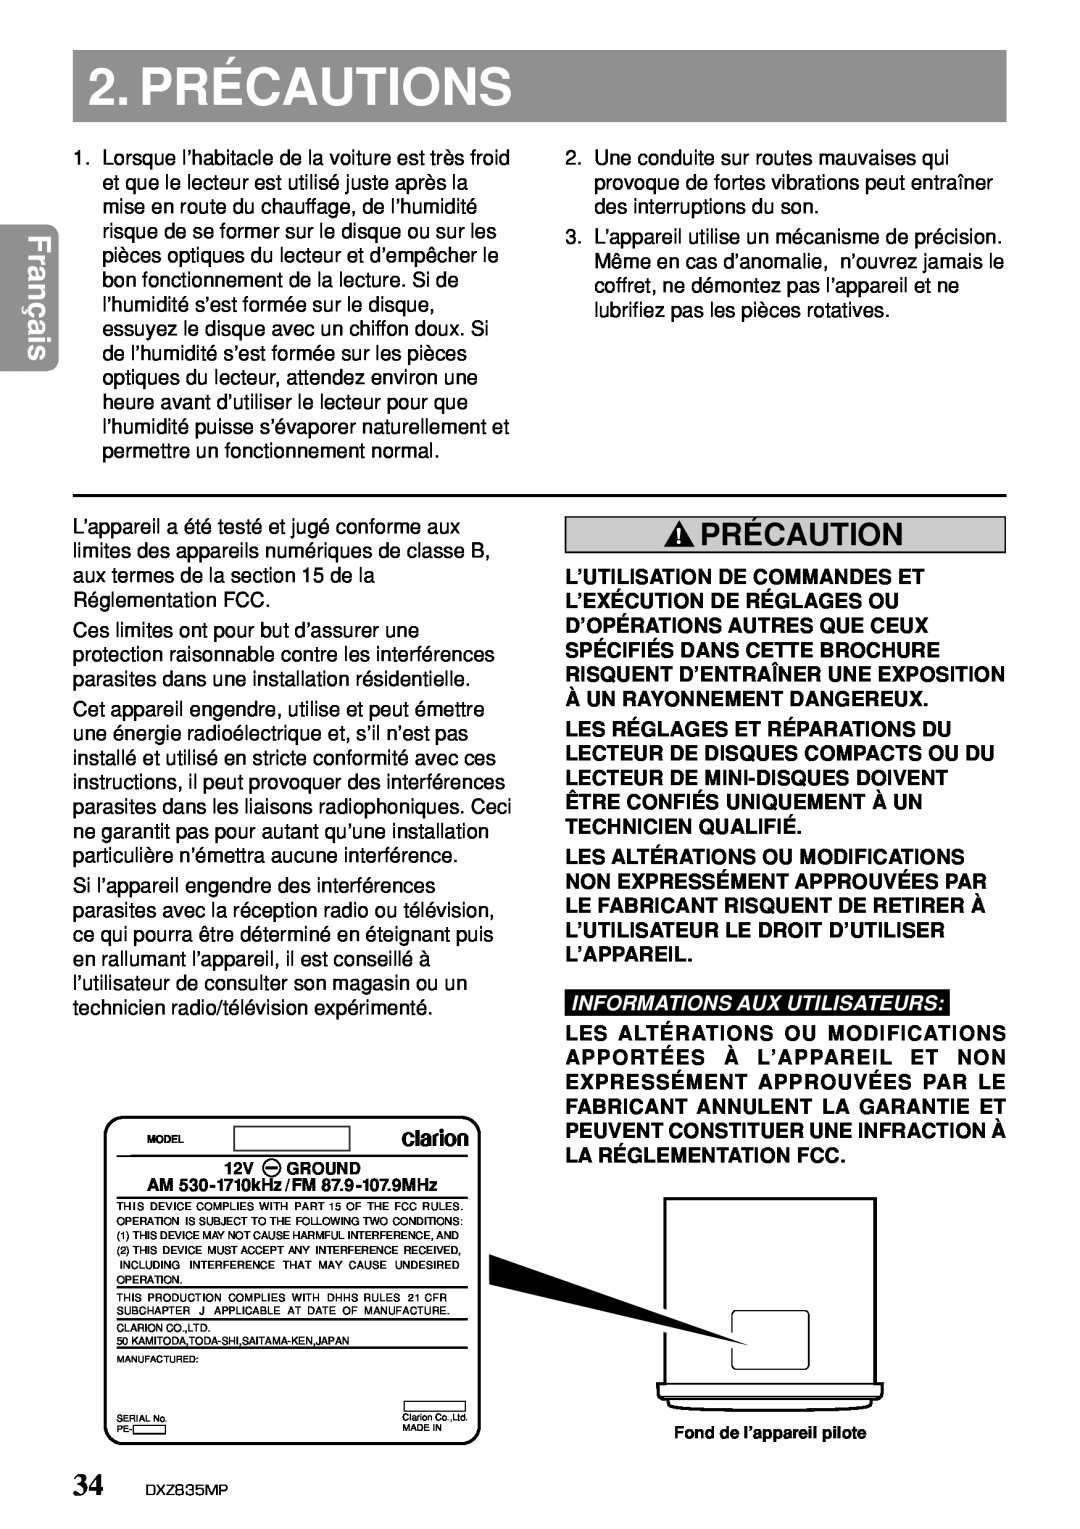 Clarion DXZ835MP owner manual 2. PRÉCAUTIONS, Précaution, Àun Rayonnement Dangereux, Informations Aux Utilisateurs 